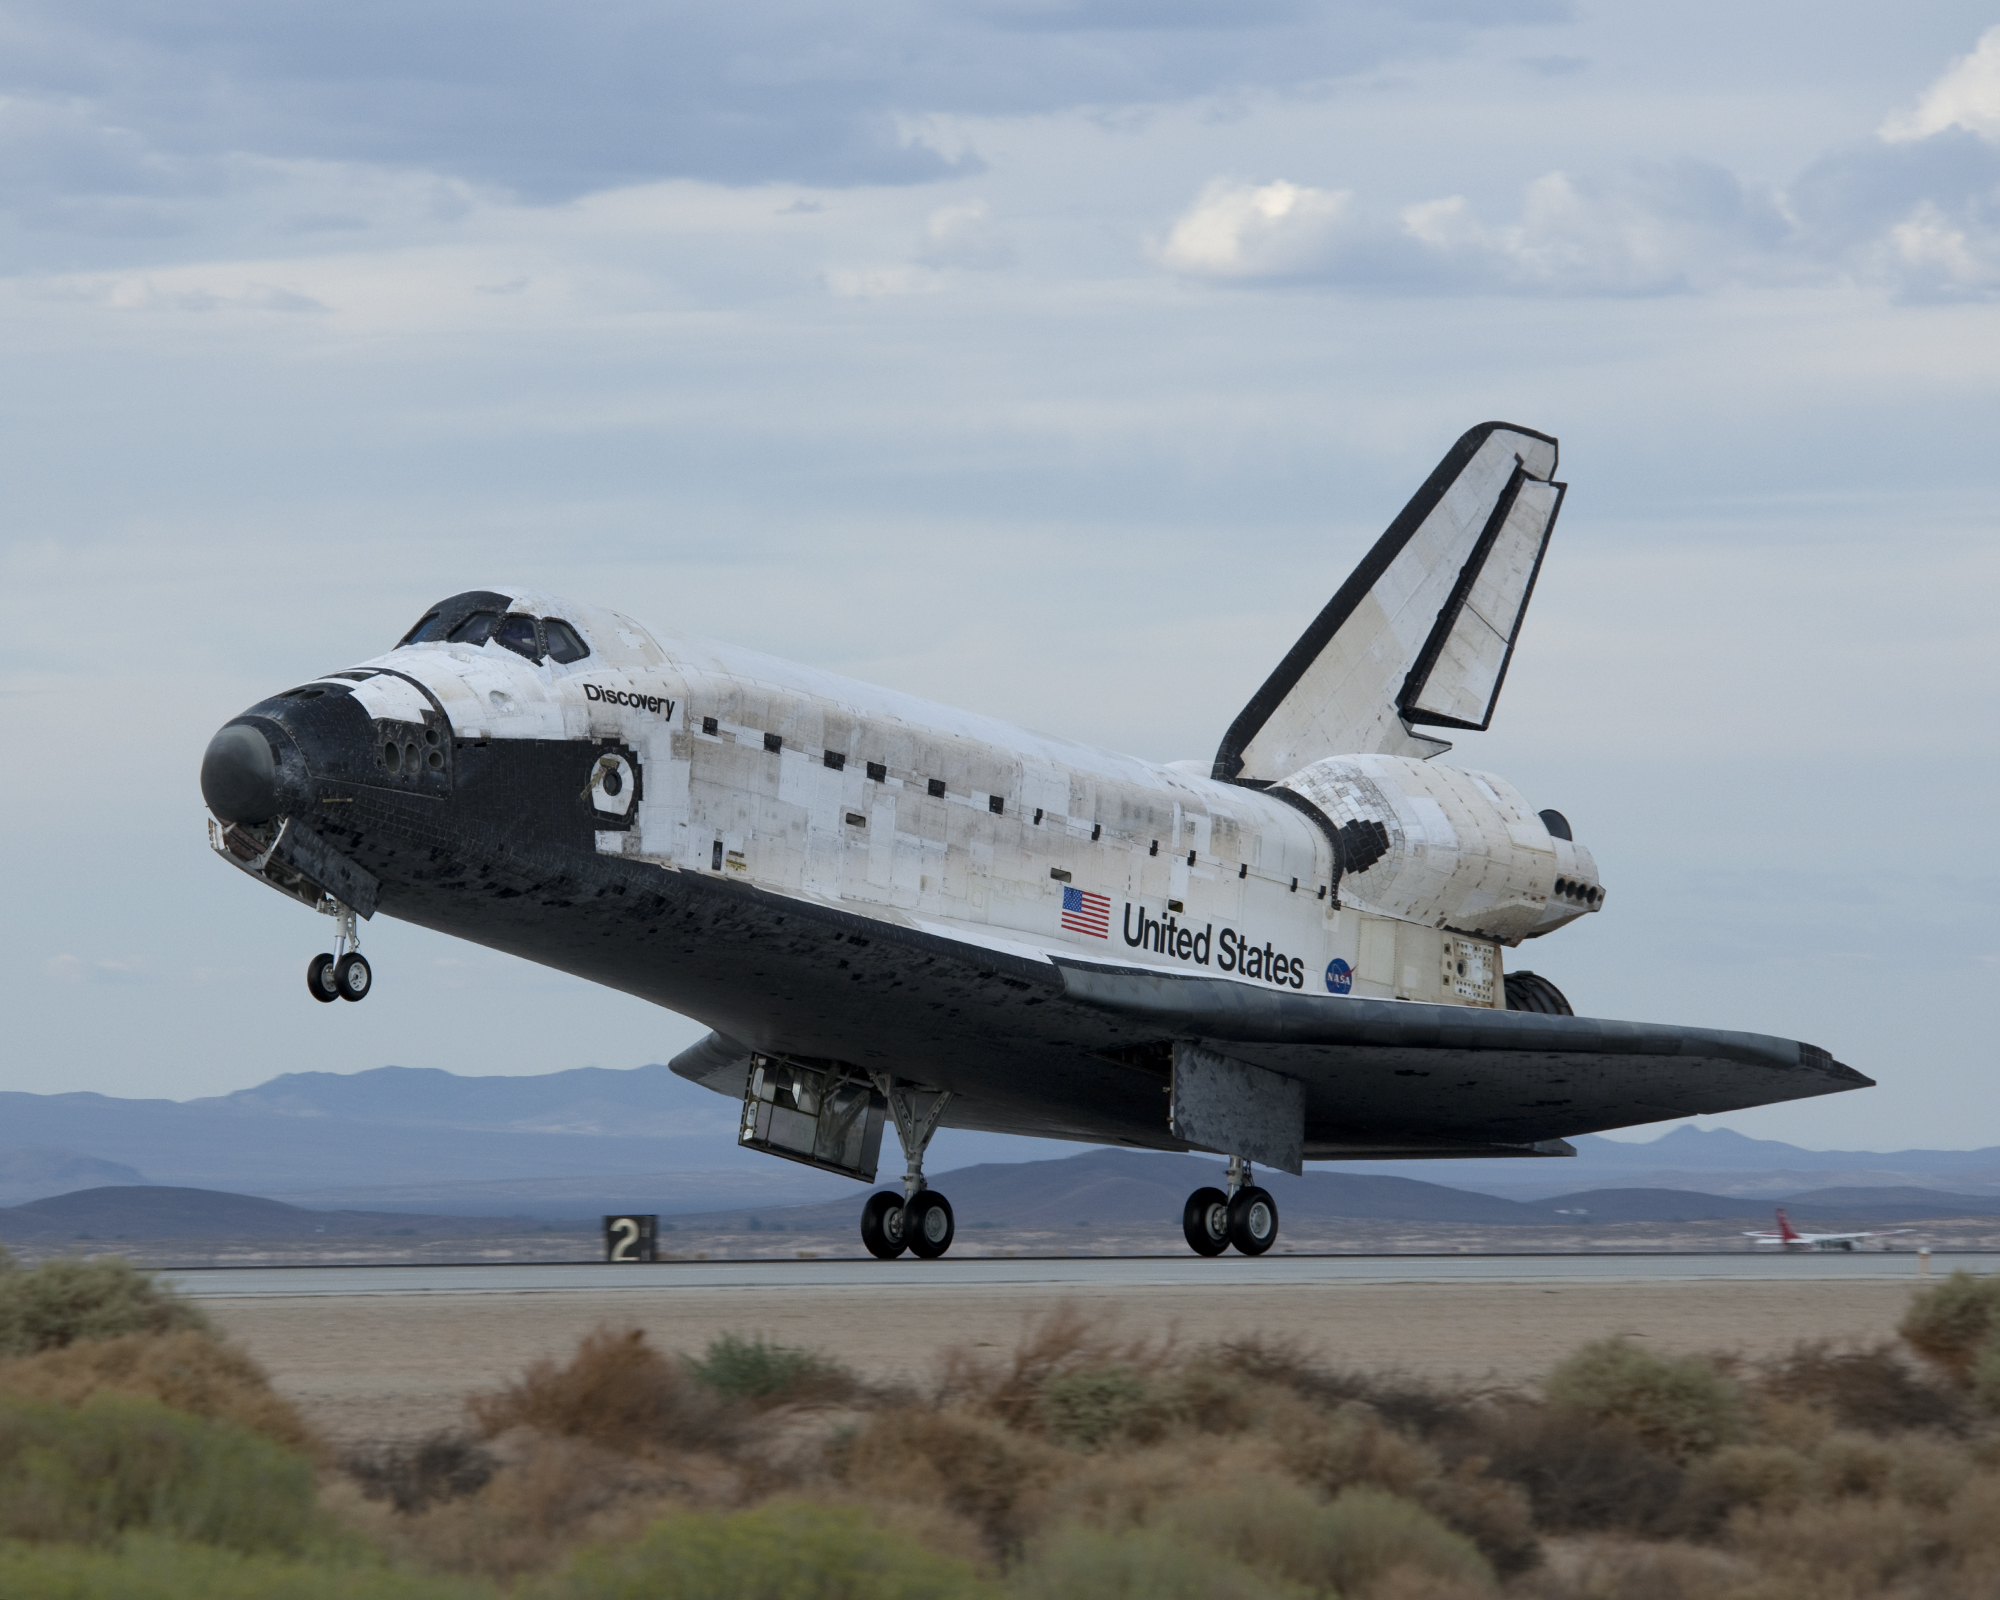 Discovery, qui termine la mission STS-128 se pose sur une piste de la base d'Edwards, en Californie, le samedi 12 septembre 2009 à 0 H 53 en Temps Universel. © 